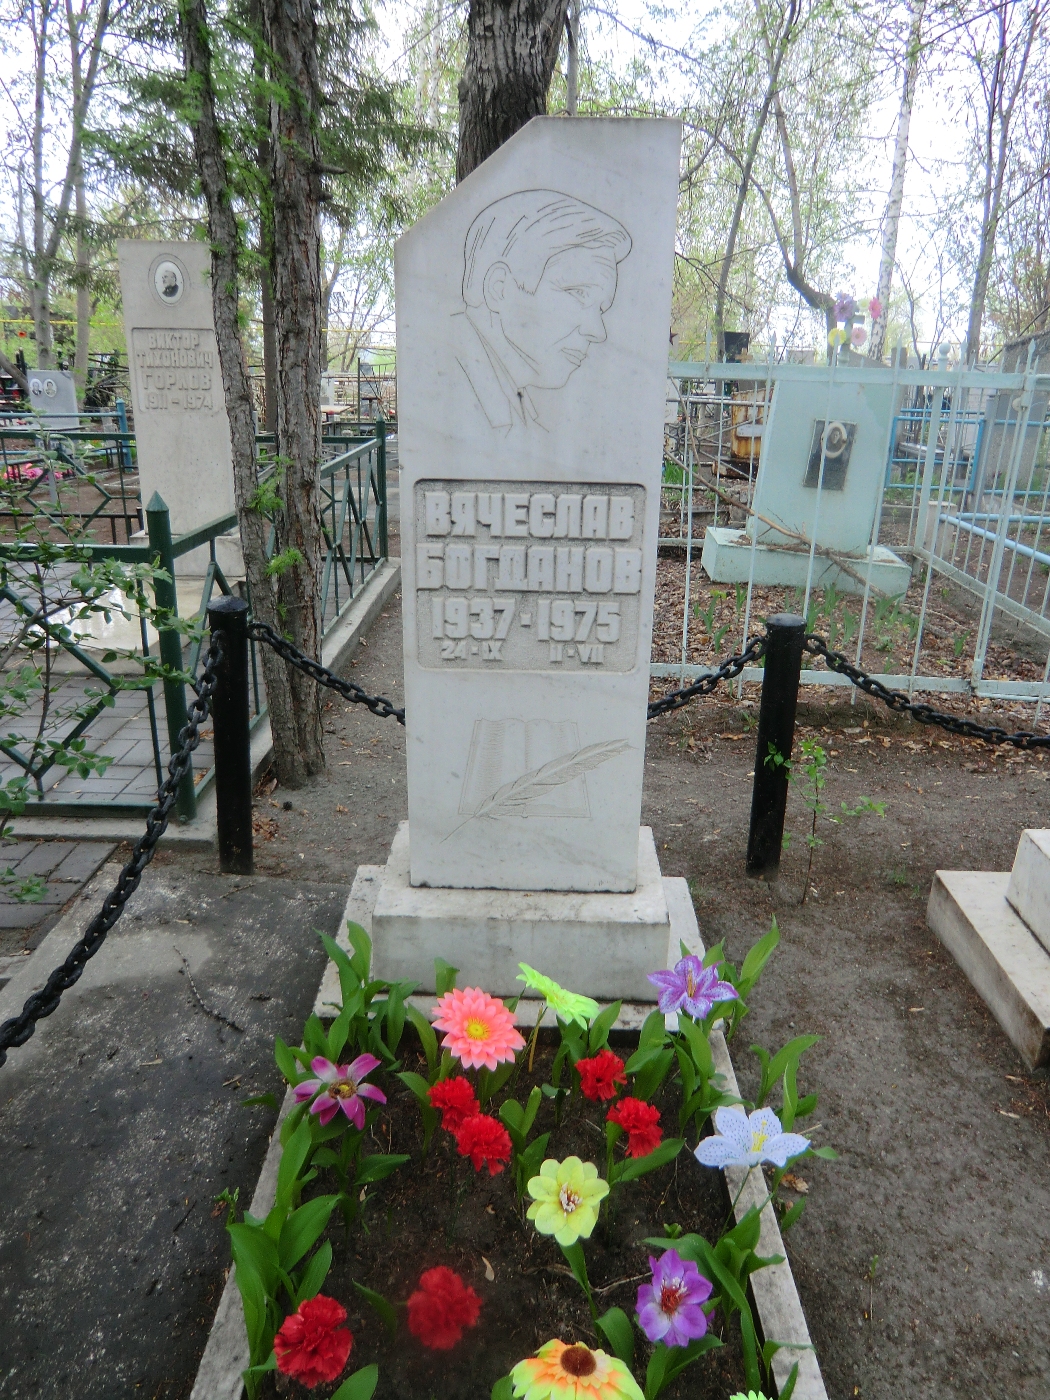 Памятник на могиле Богданова В.А. Богданова (1937-1975), Челябинск, Успенское кладбище, квартал 1.